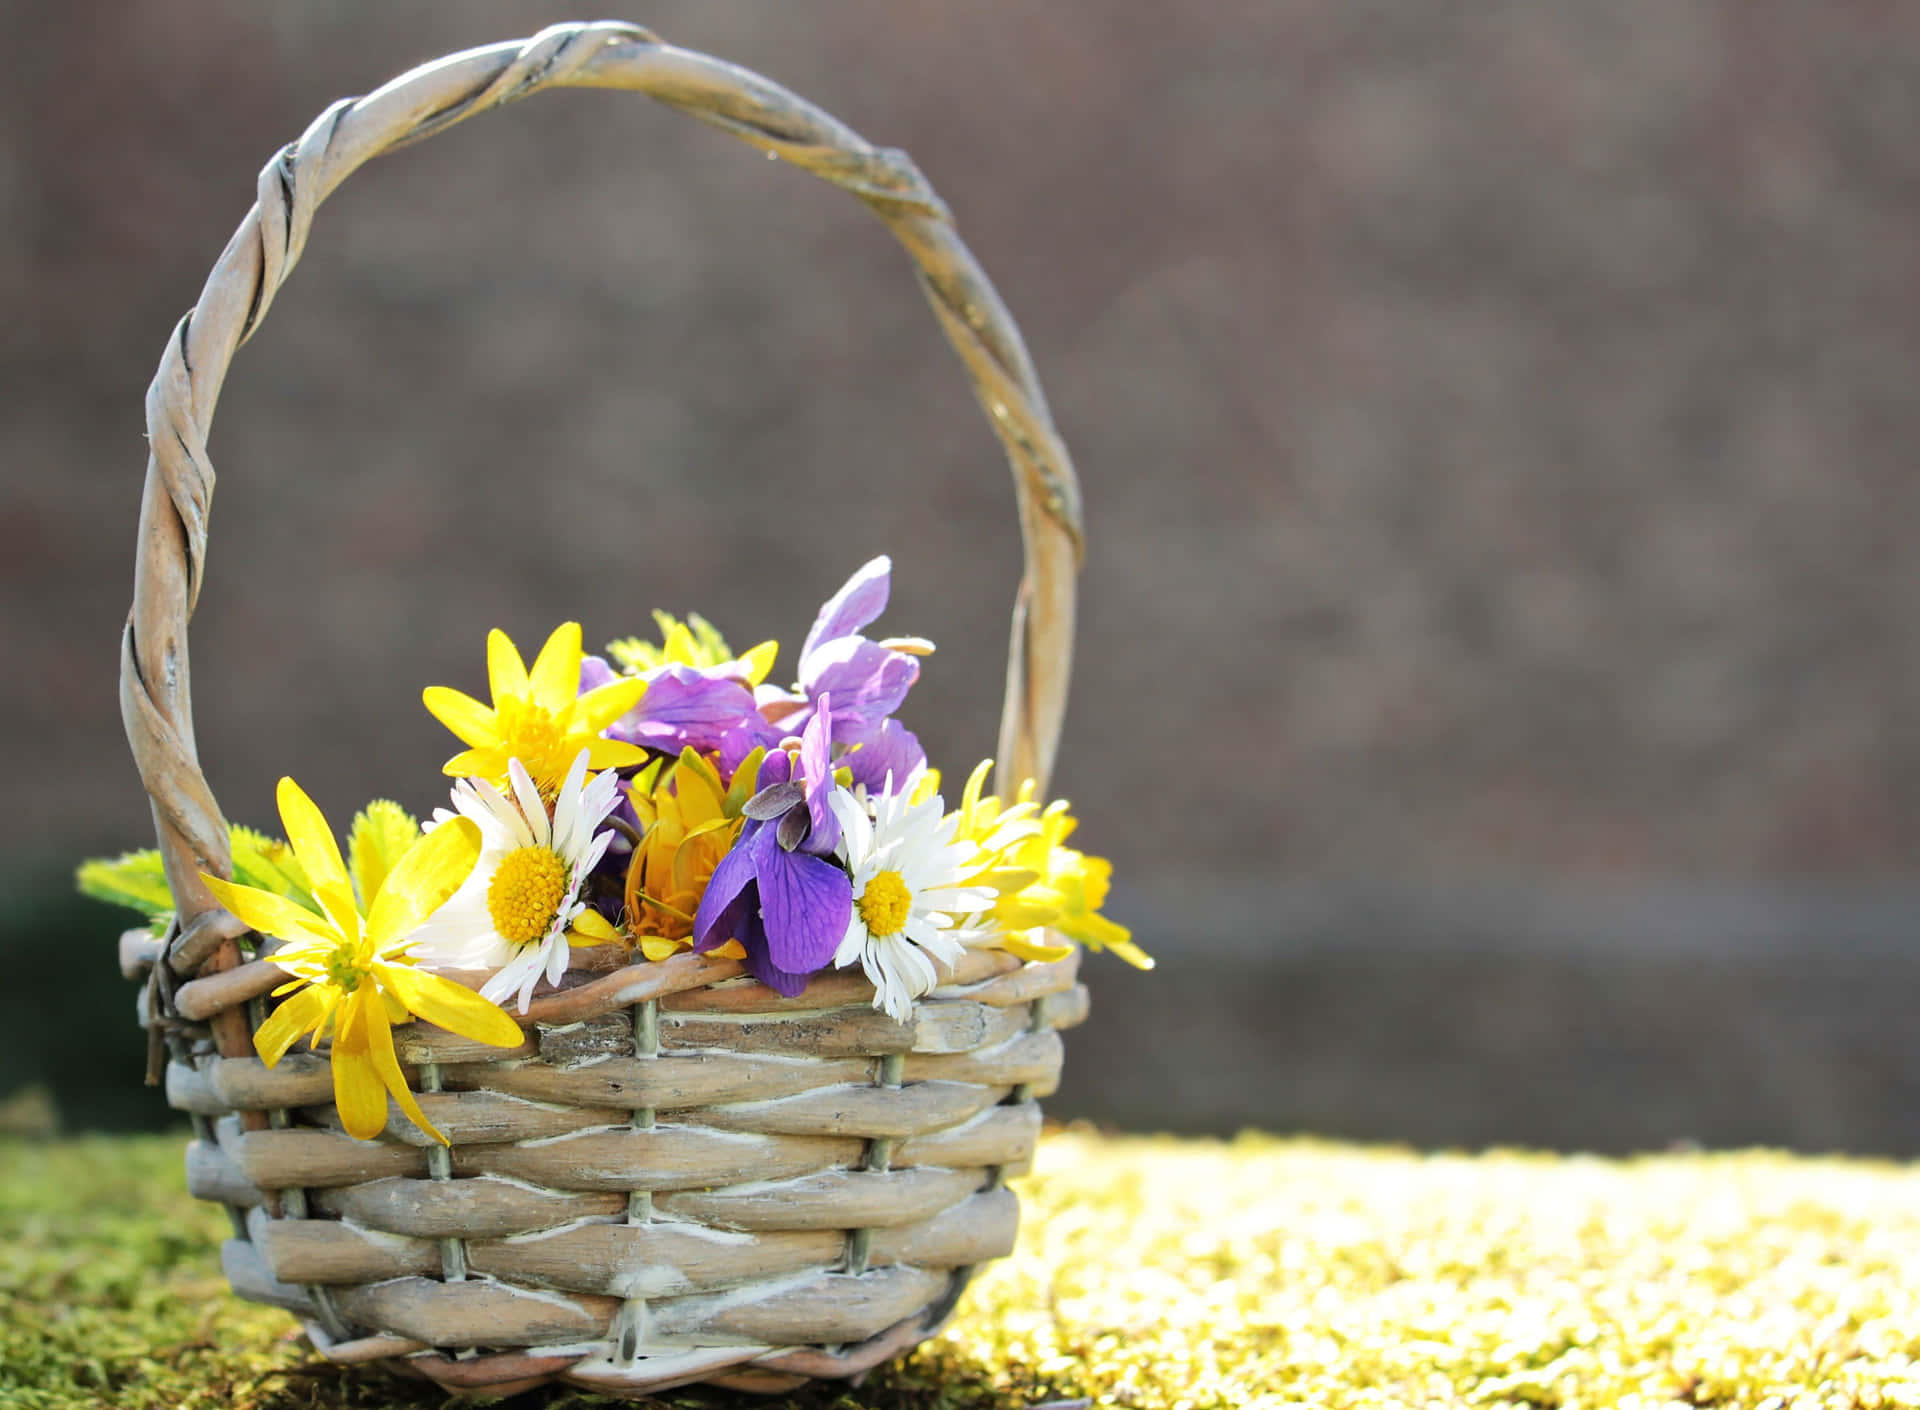 Springtime Flower Basket Sunlit Background.jpg Background